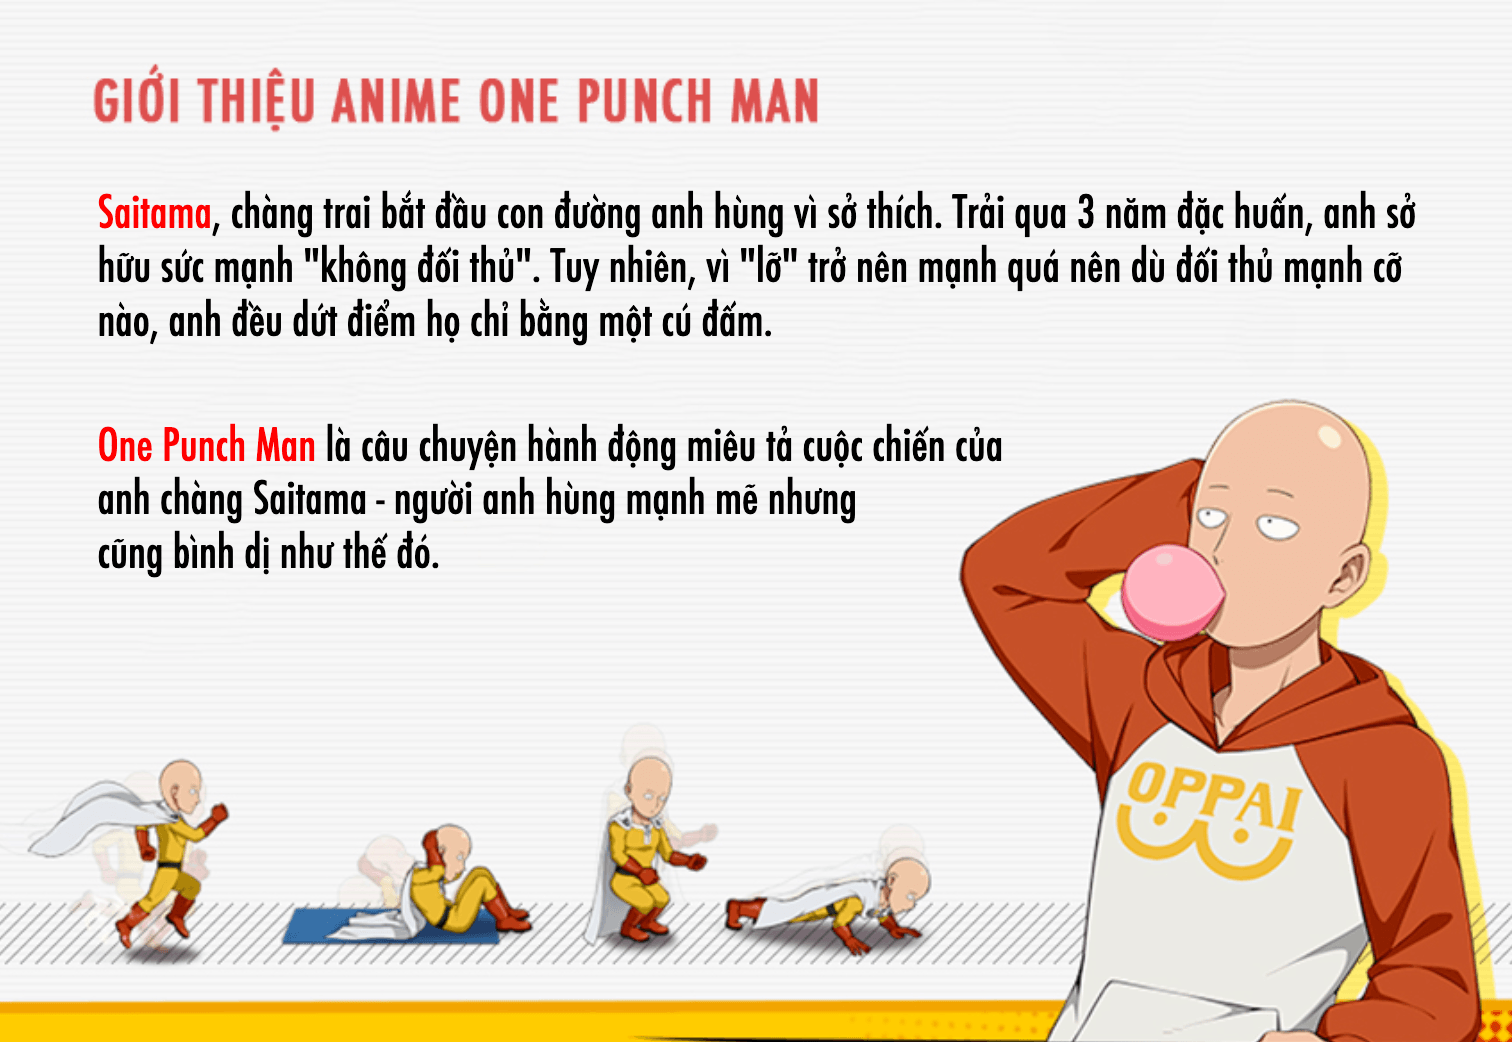 One Punch Man: The Strongest - Những tính năng hứa hẹn hấp dẫn